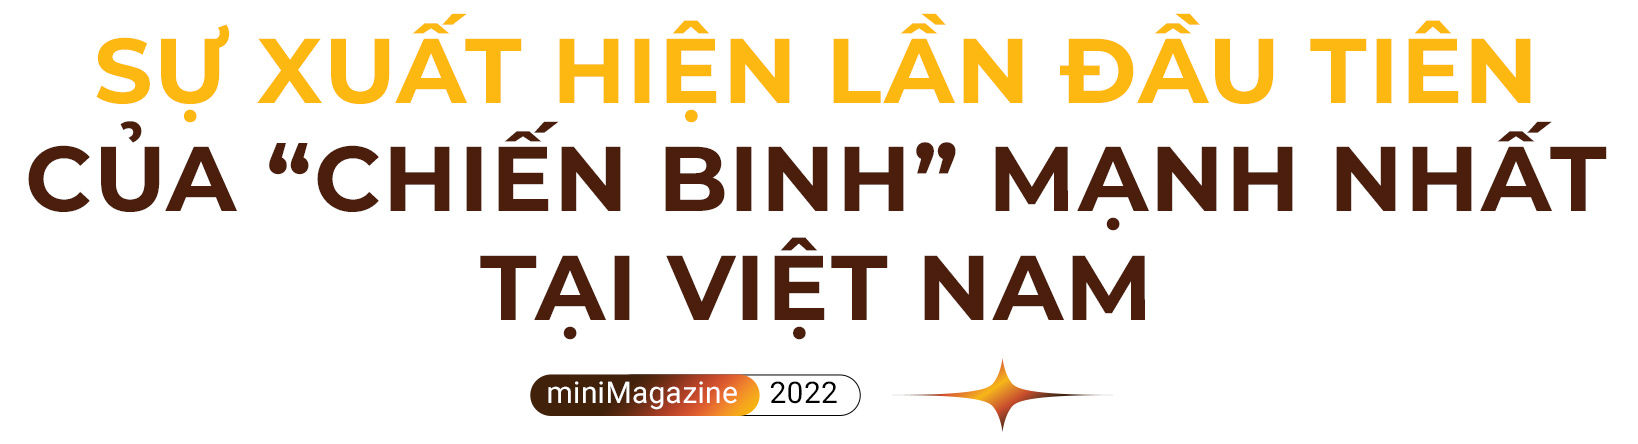 Đại diện Gulfstream: “Cơ hội cho ngành hàng không cao cấp đang thực sự rộng mở tại Việt Nam” - Ảnh 1.